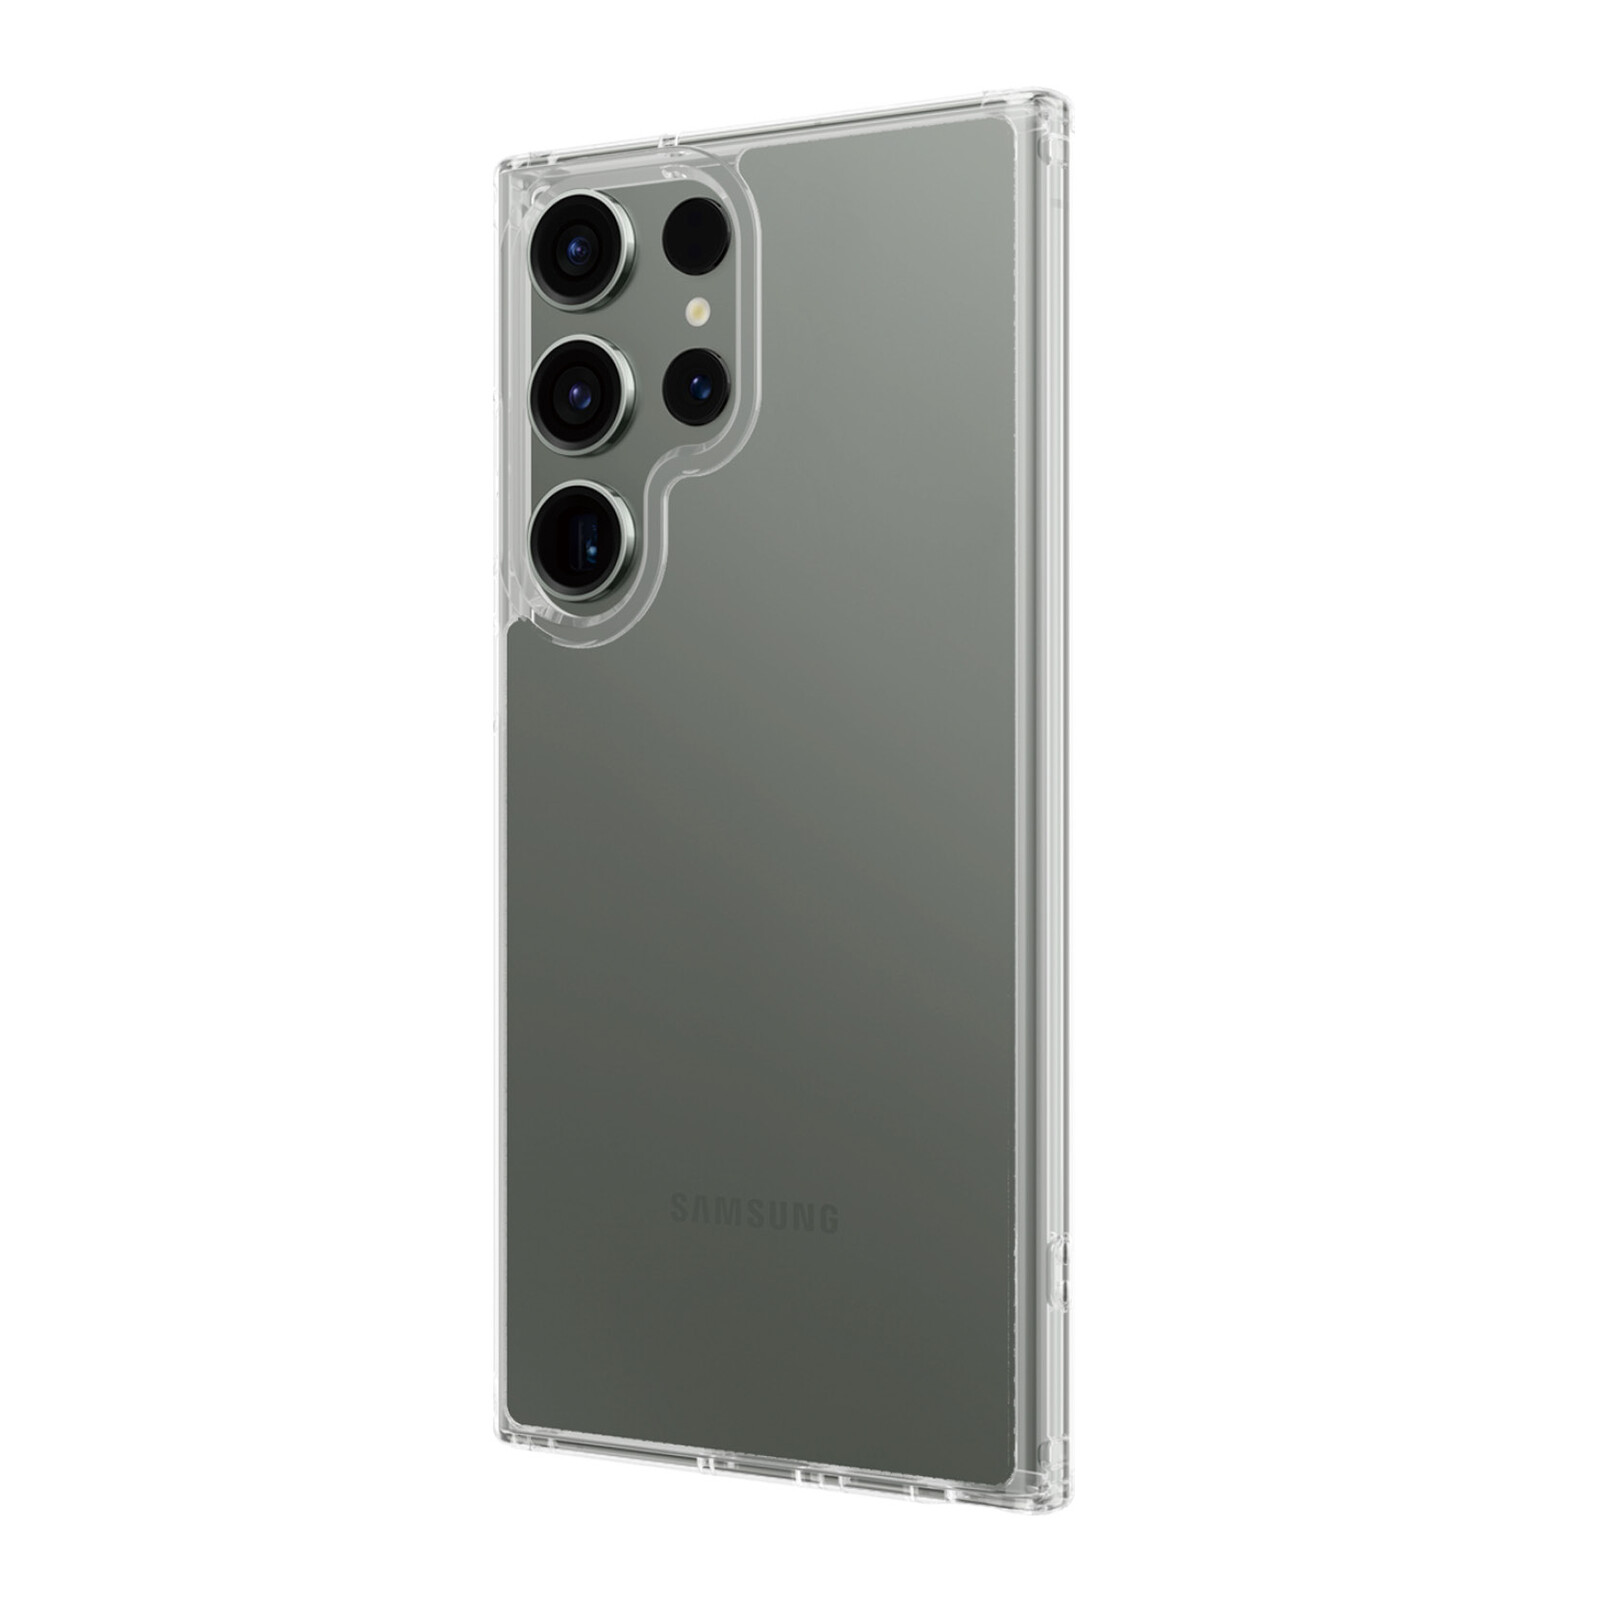 PanzerGlass® PicturePerfect Kameraschutz Samsung Galaxy S24 Ultra